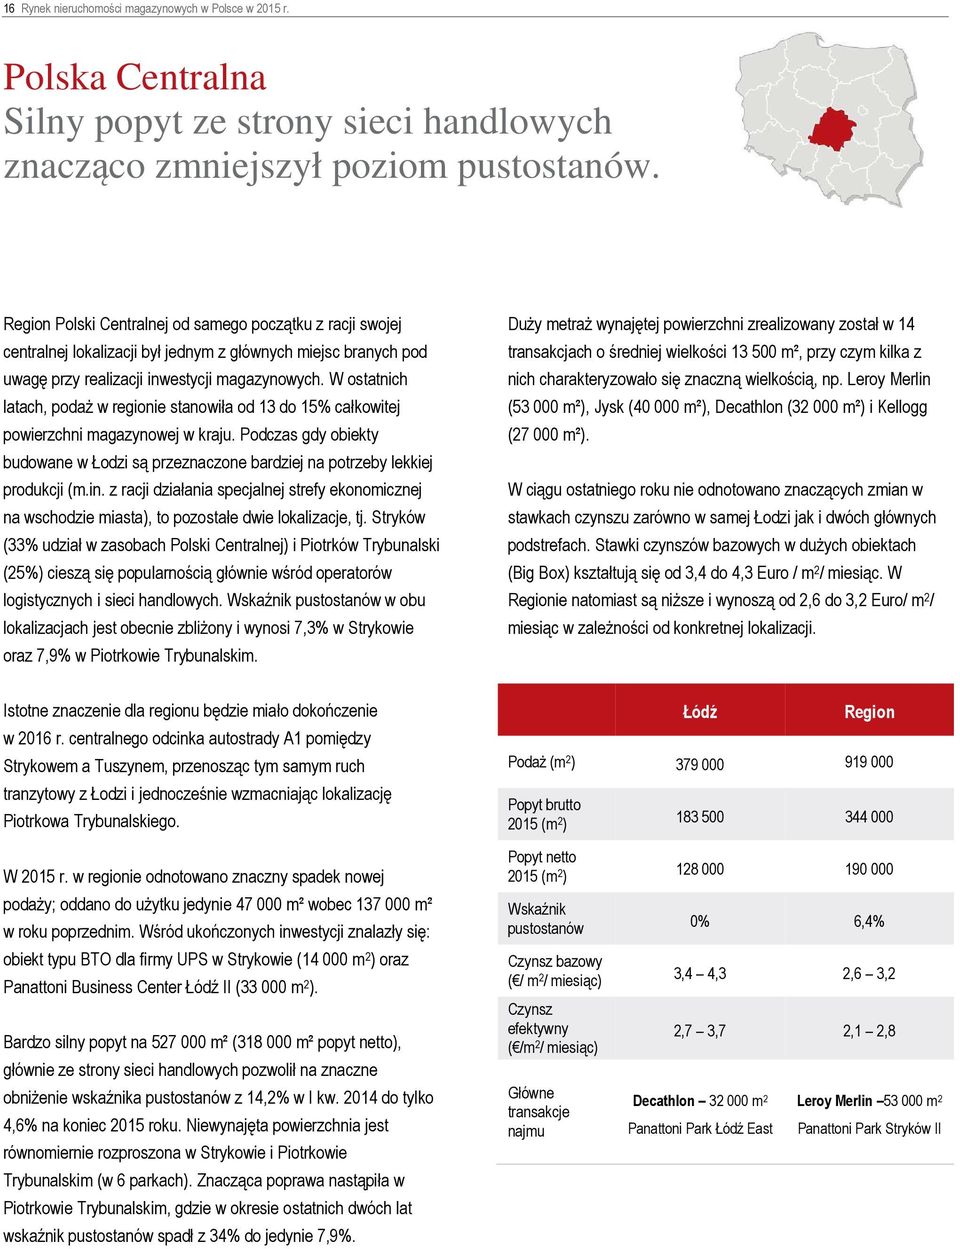 W ostatnich latach, podaż w regionie stanowiła od 13 do 15% całkowitej powierzchni magazynowej w kraju. Podczas gdy obiekty budowane w Łodzi są przeznaczone bardziej na potrzeby lekkiej produkcji (m.